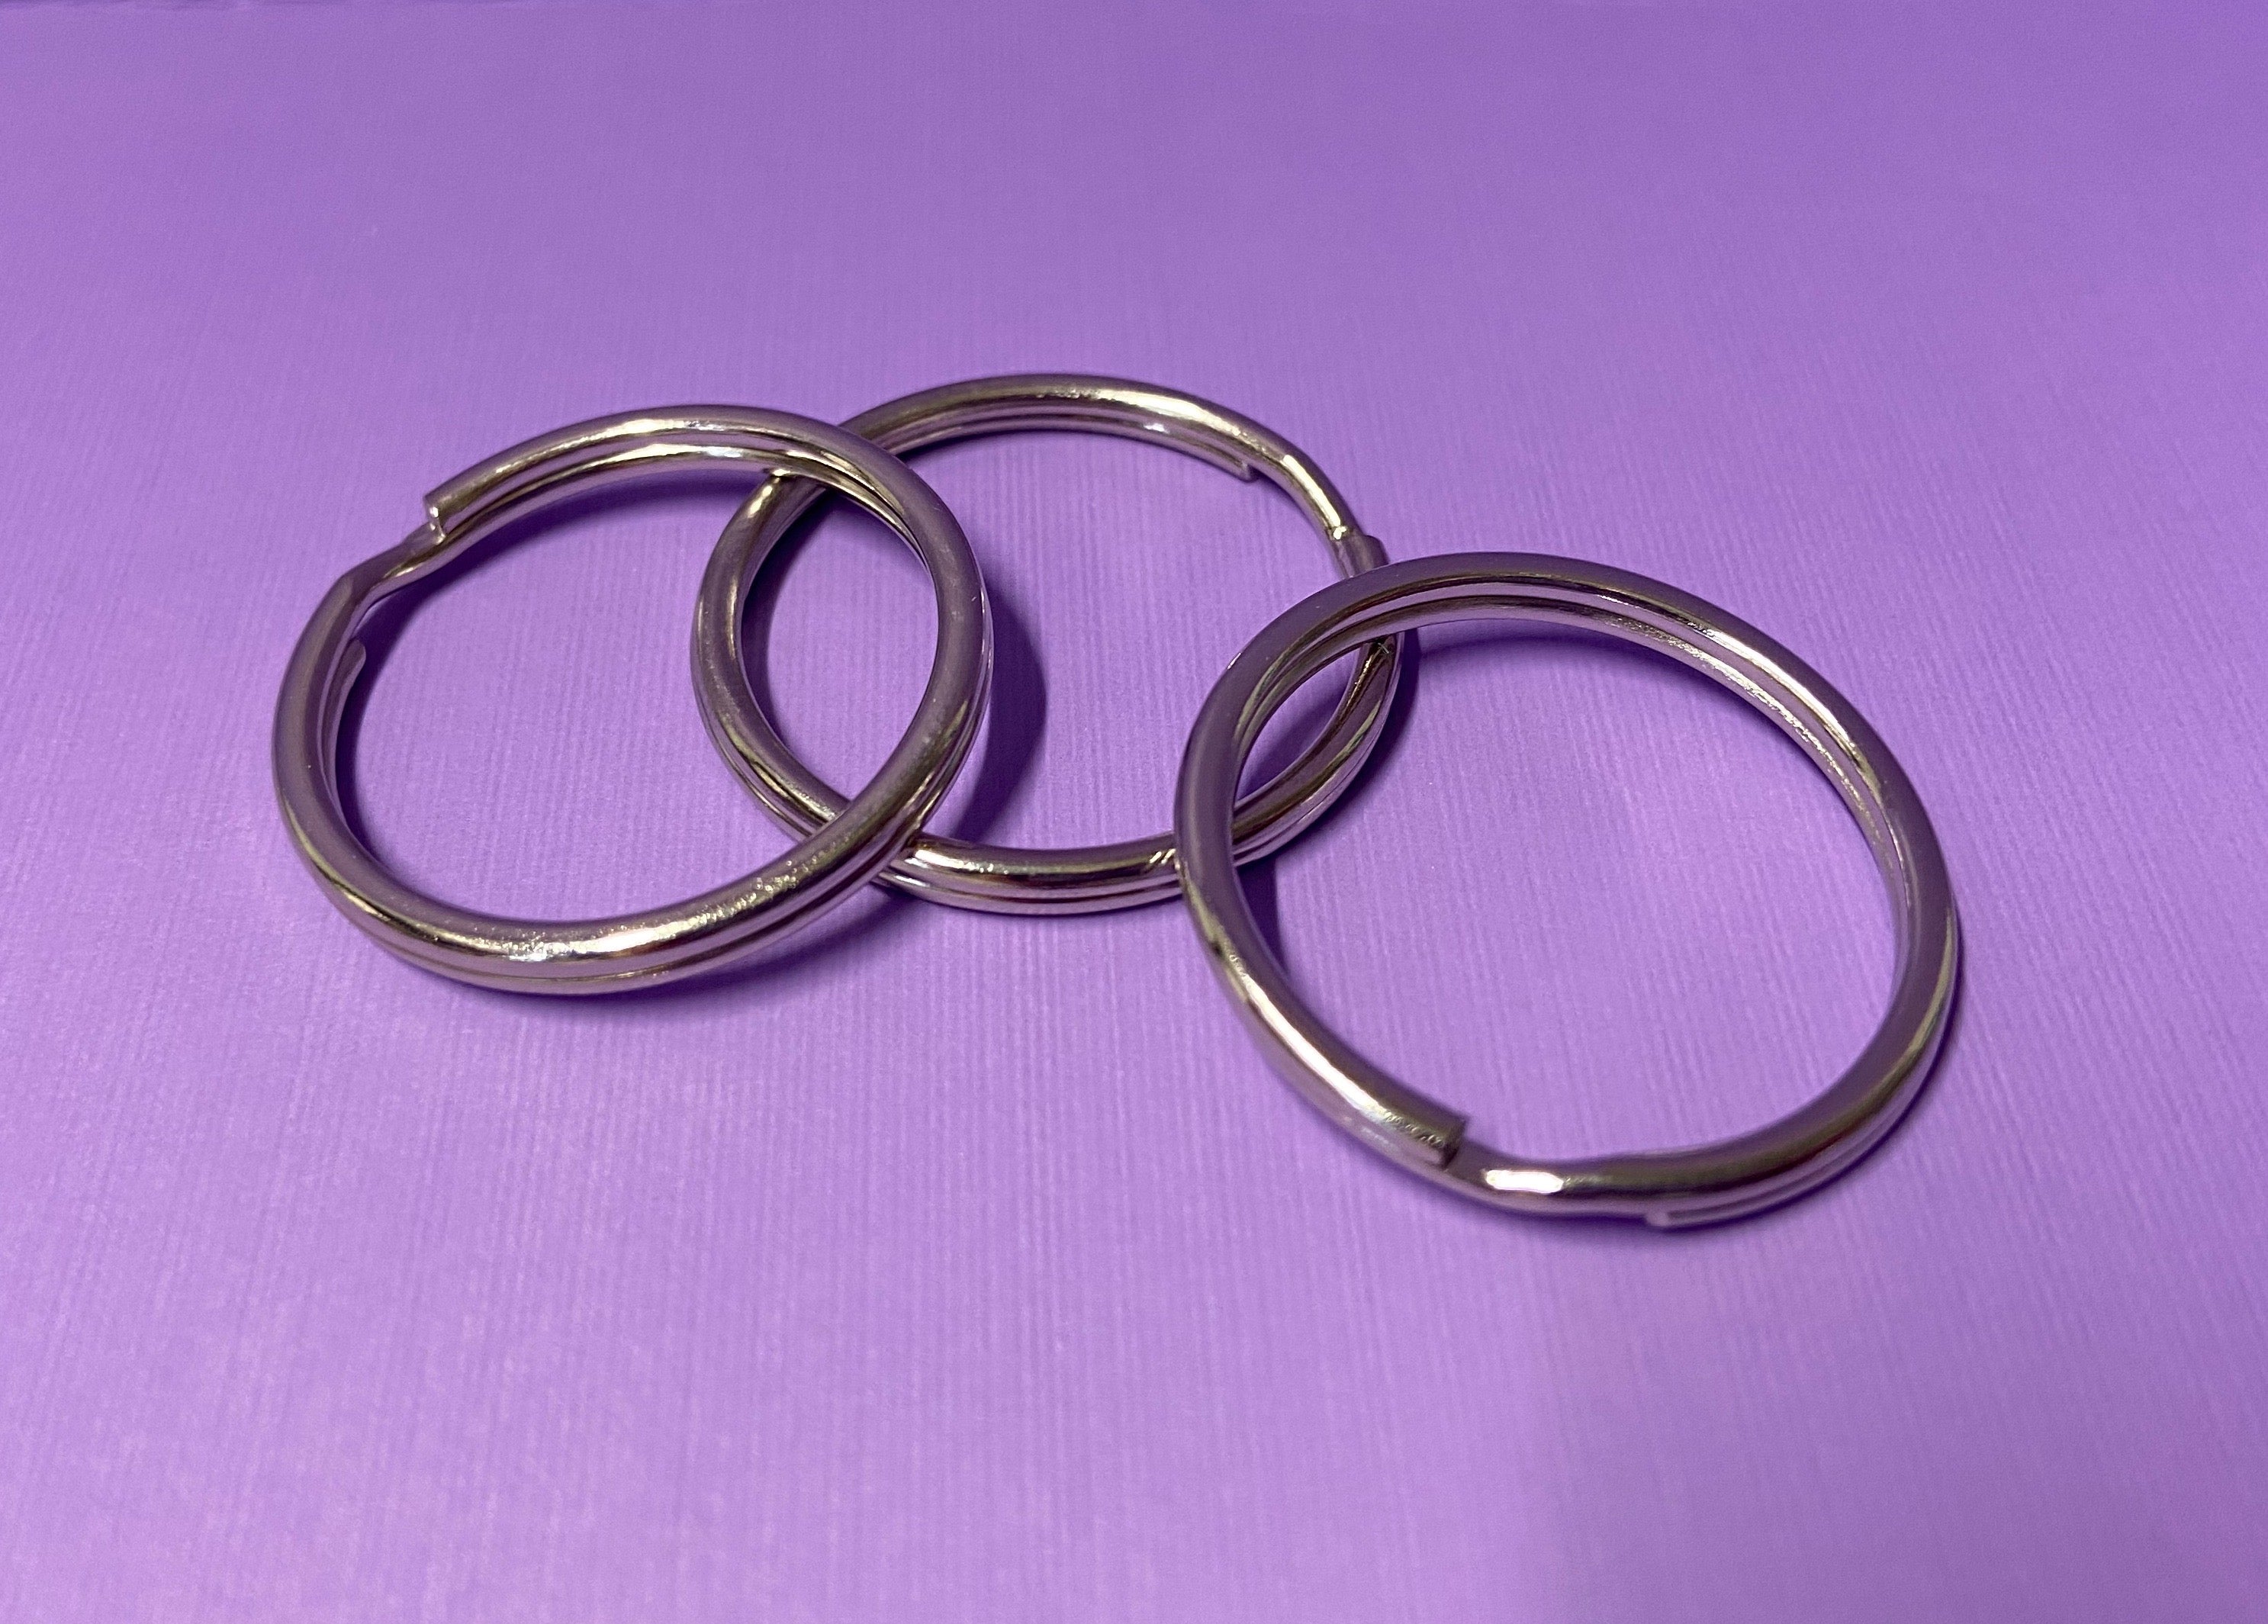 Bronze Split Key Rings - 25mm Iron Based Alloy Silver Tone Key Ring 5pcs